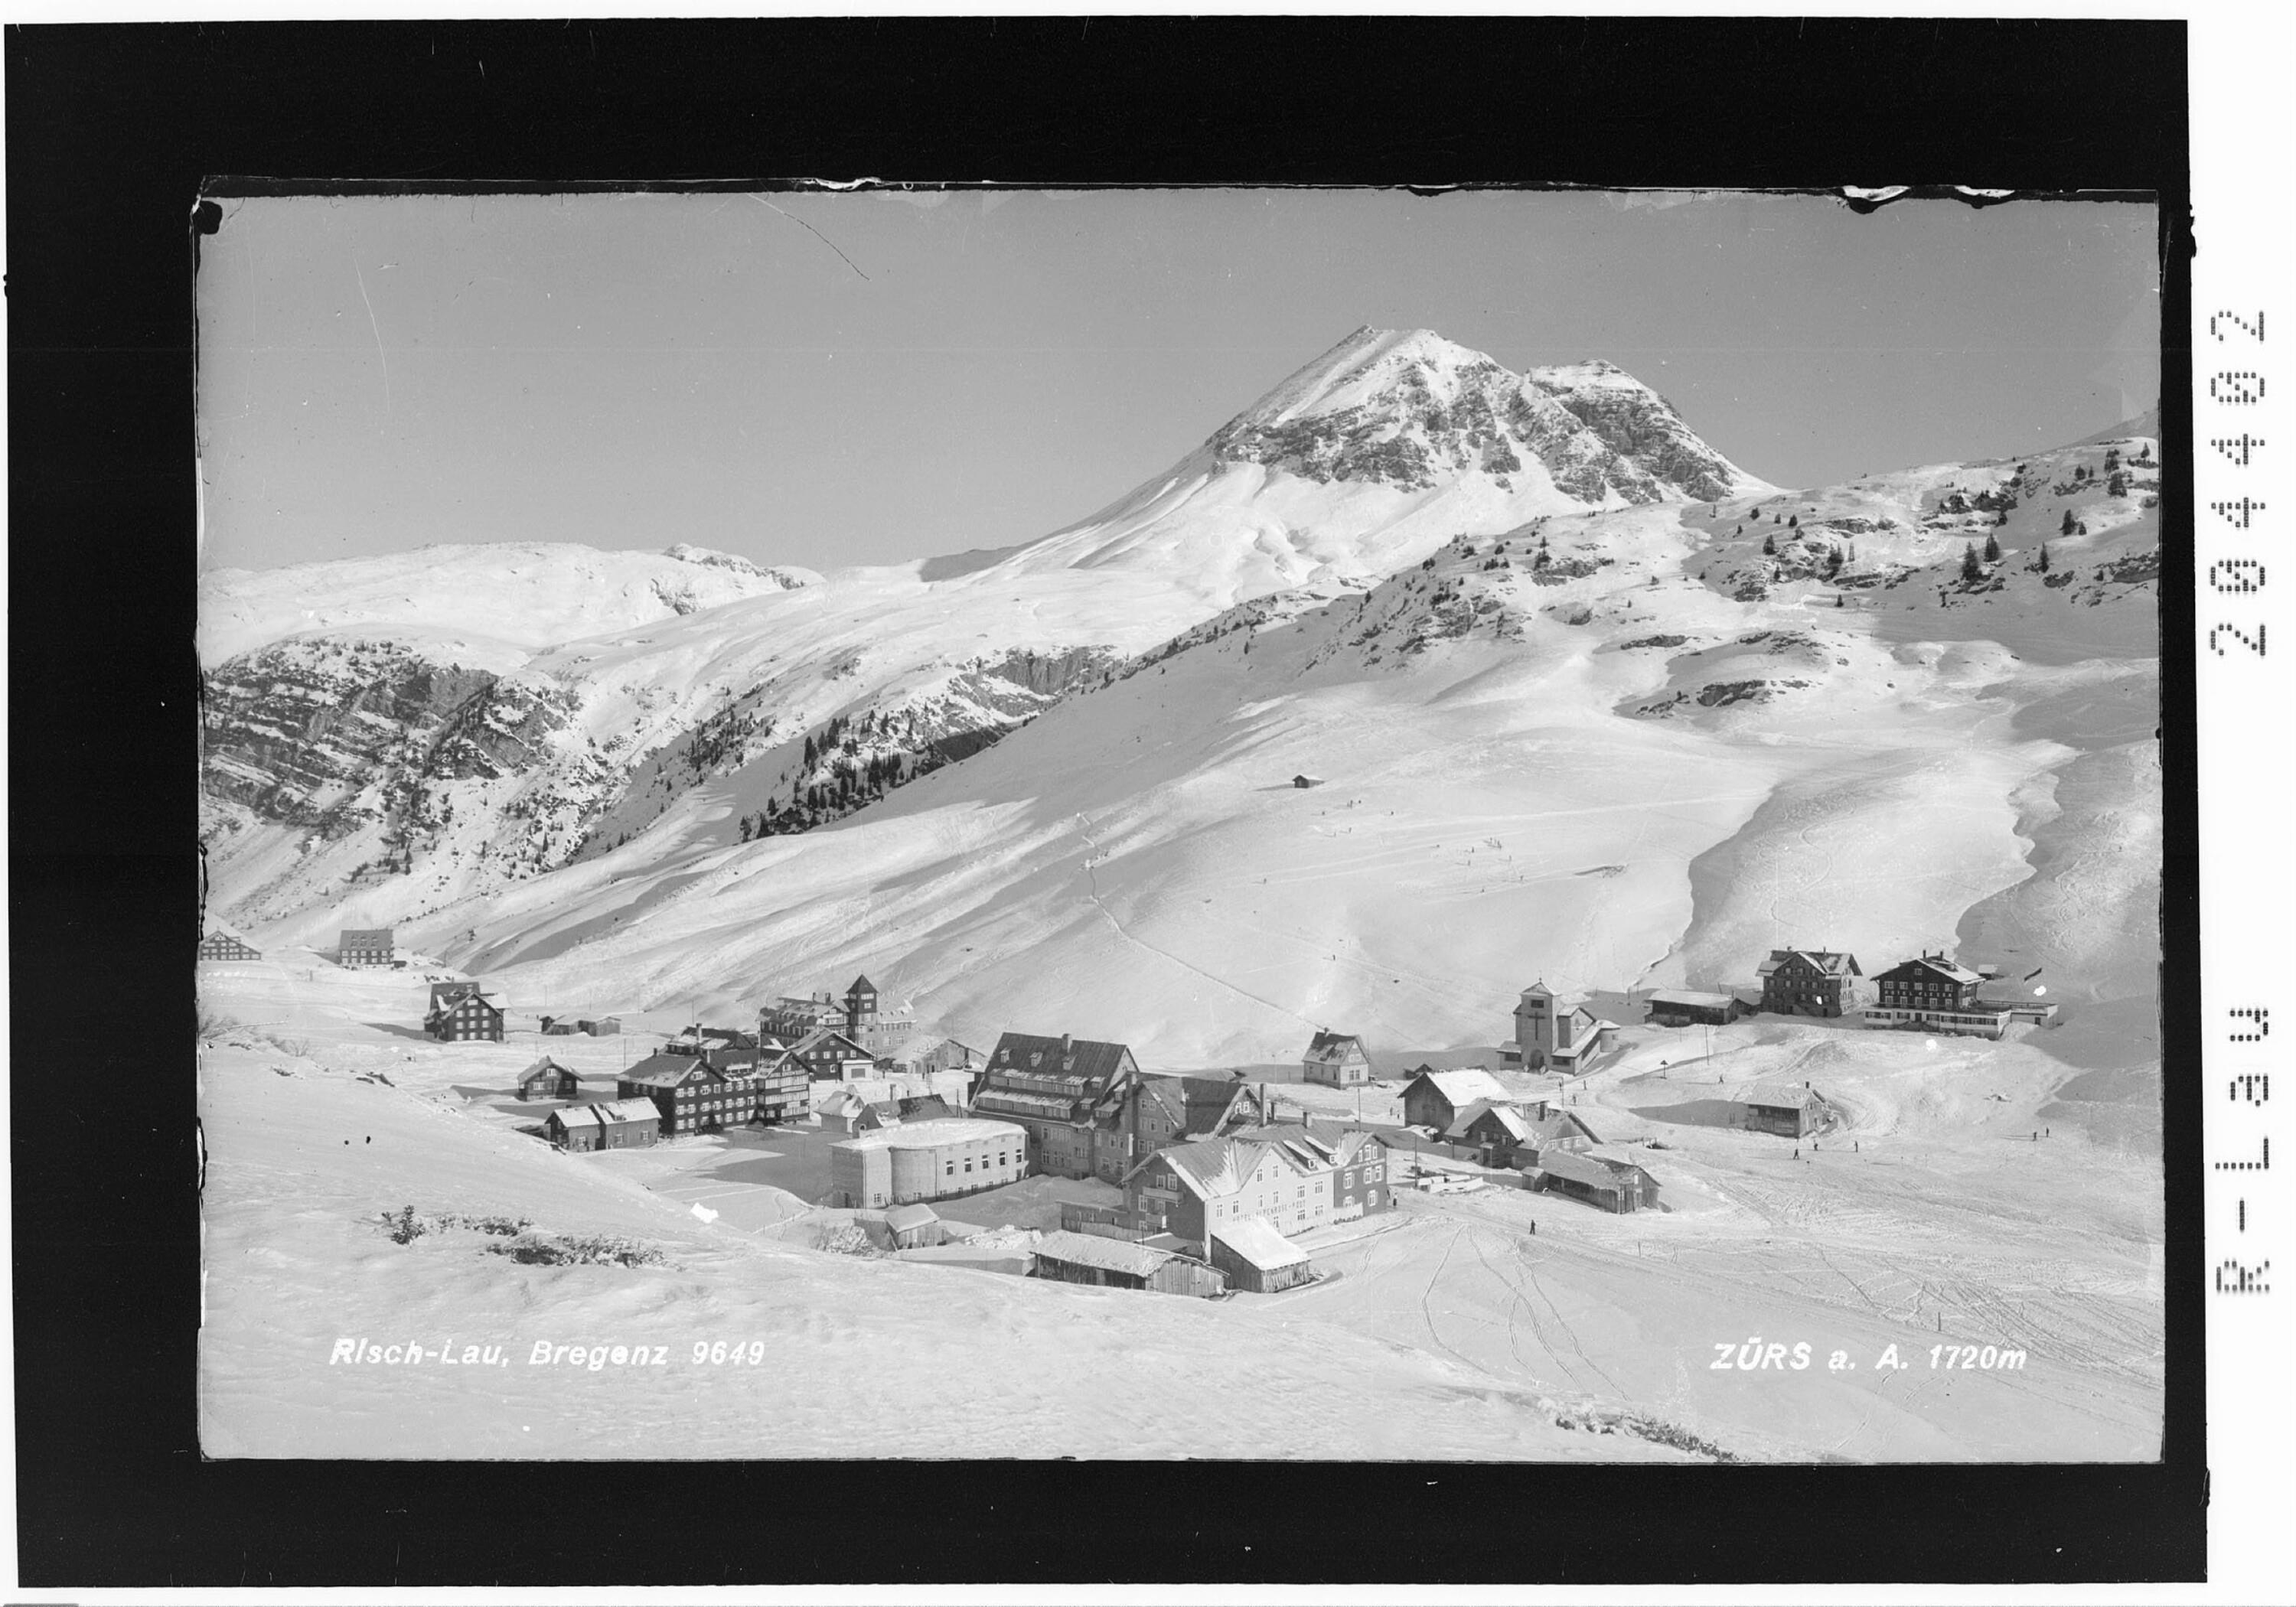 Zürs am Arlberg 1720 m></div>


    <hr>
    <div class=